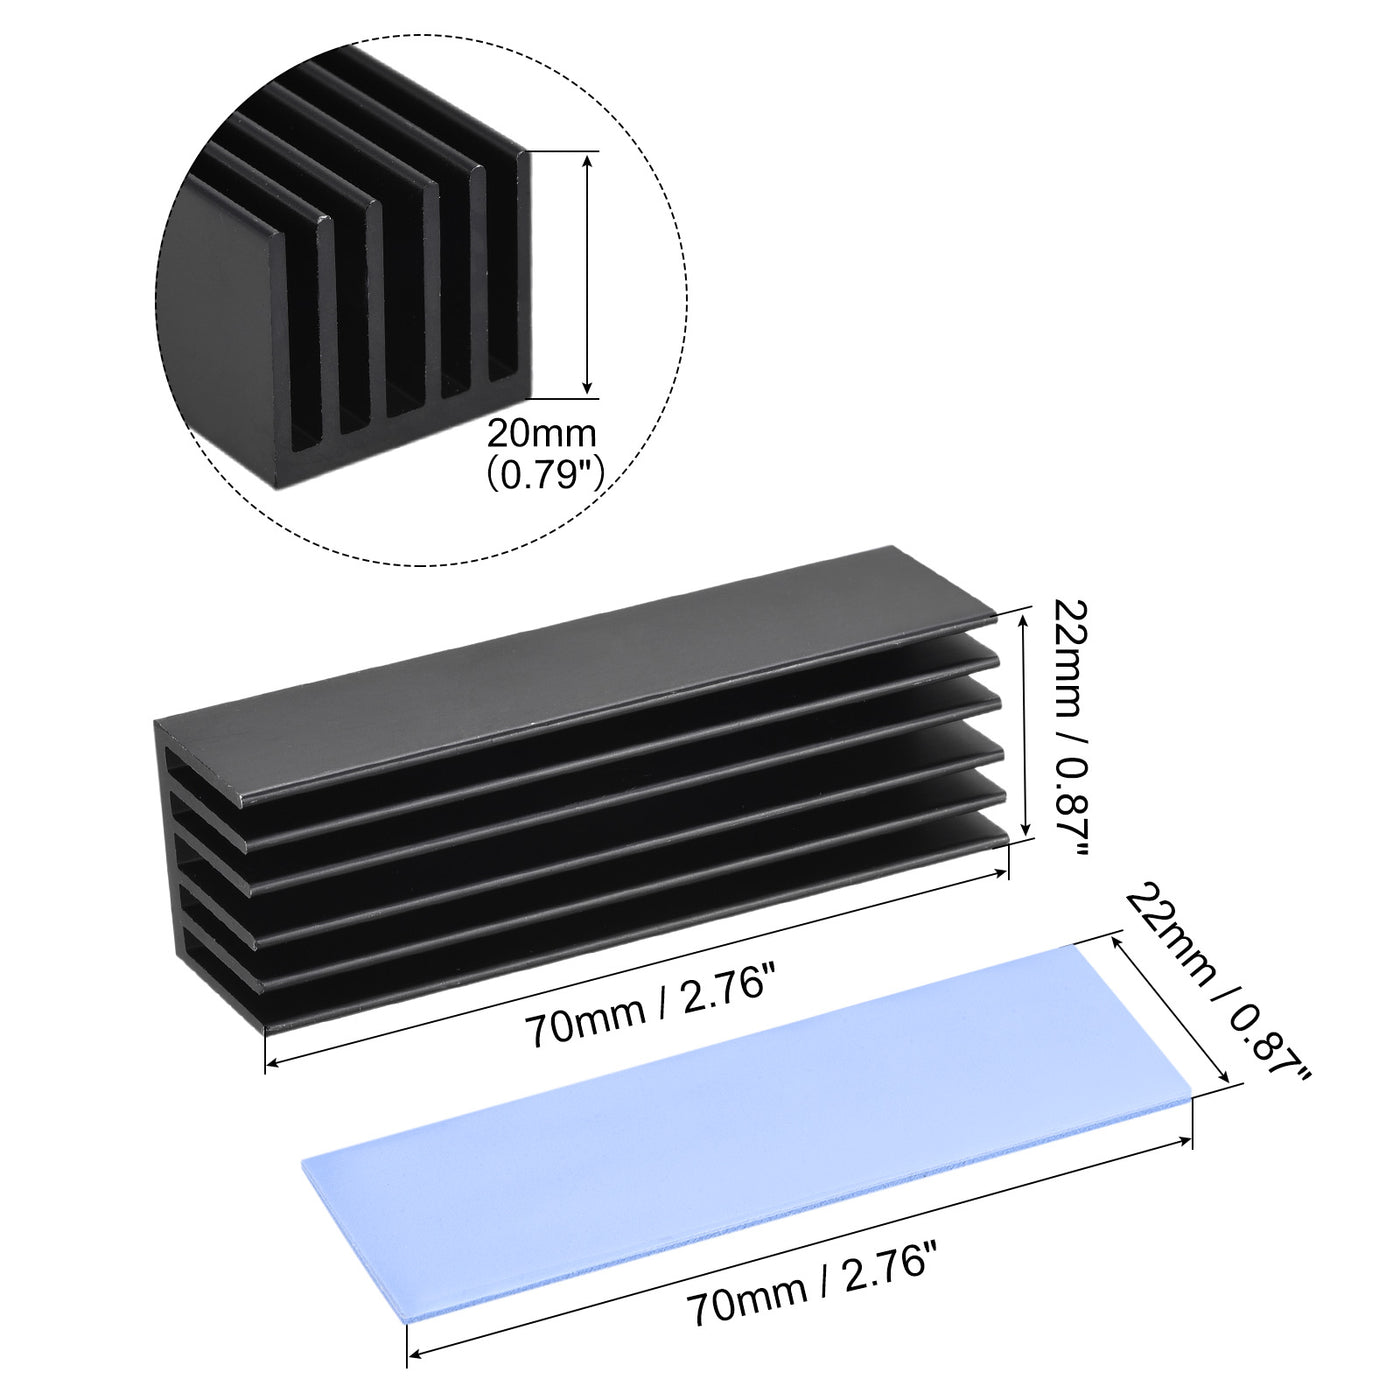 Harfington Aluminum Heatsink Black 70x22x20mm W Tools and 1 x Pre-Cut Thermal Pad for SSD